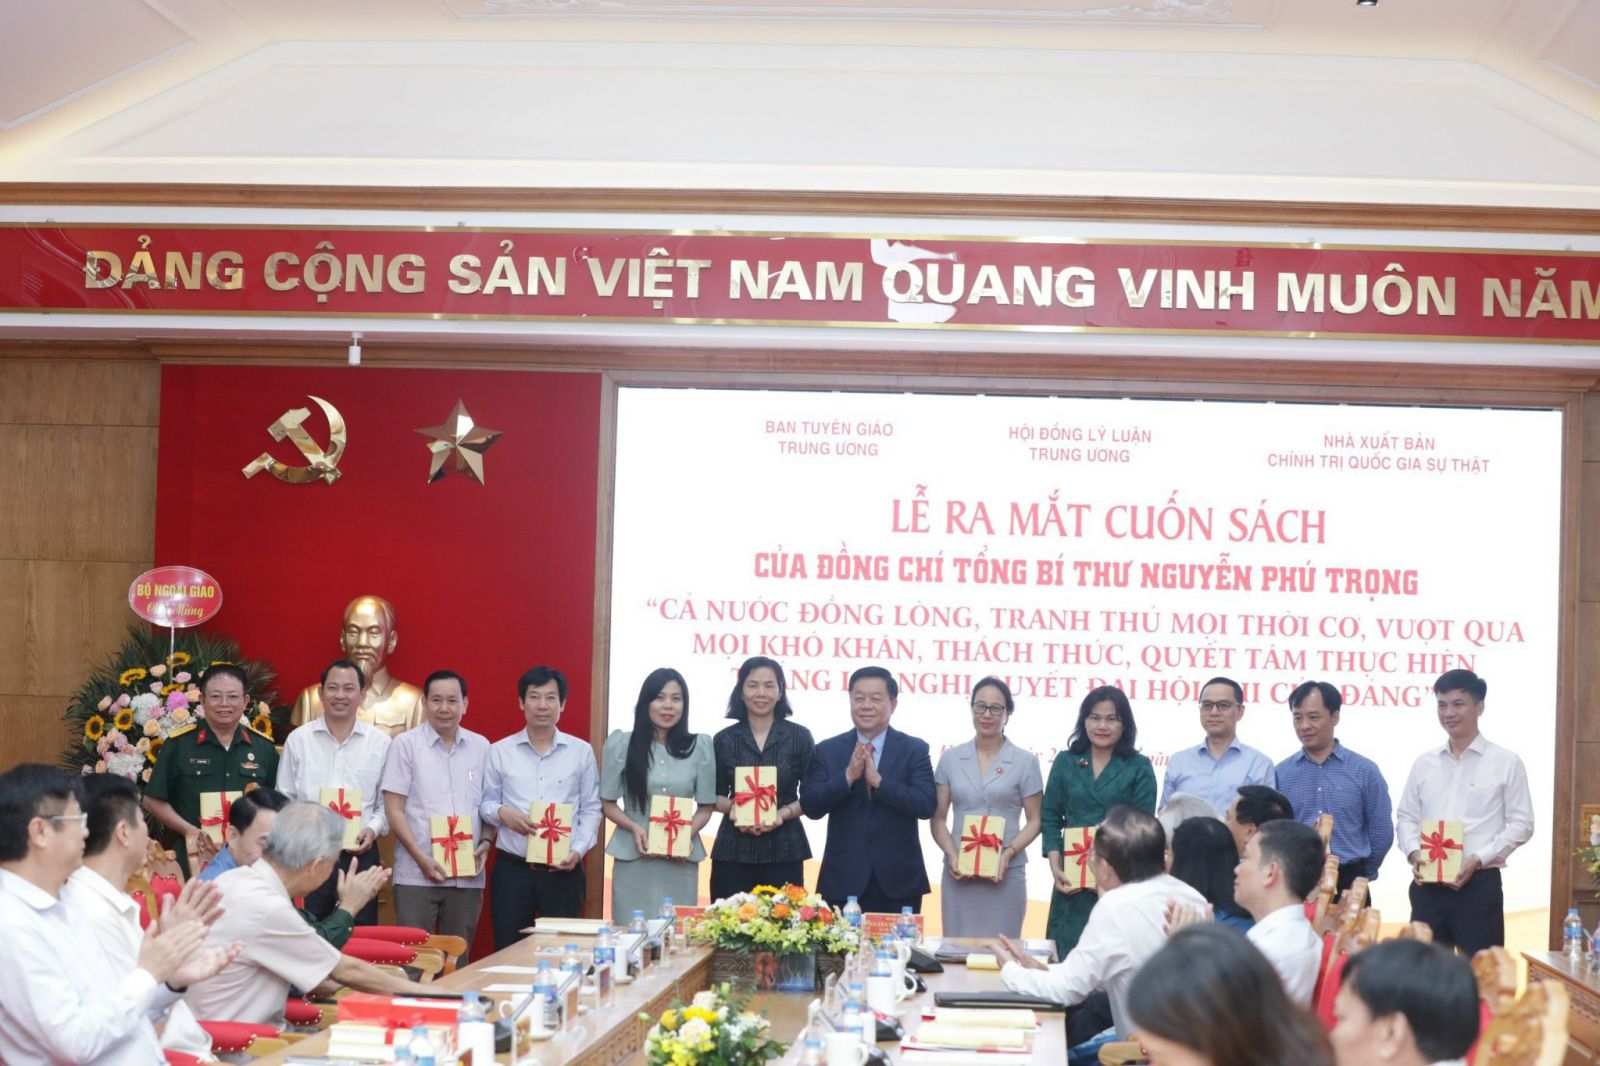 Đồng chí Nguyễn Trọng Nghĩa, Bí thư Trung ương Đảng, Trưởng Ban Tuyên giáo Trung ương tặng sách cho đại diện các cơ quan Trung ương